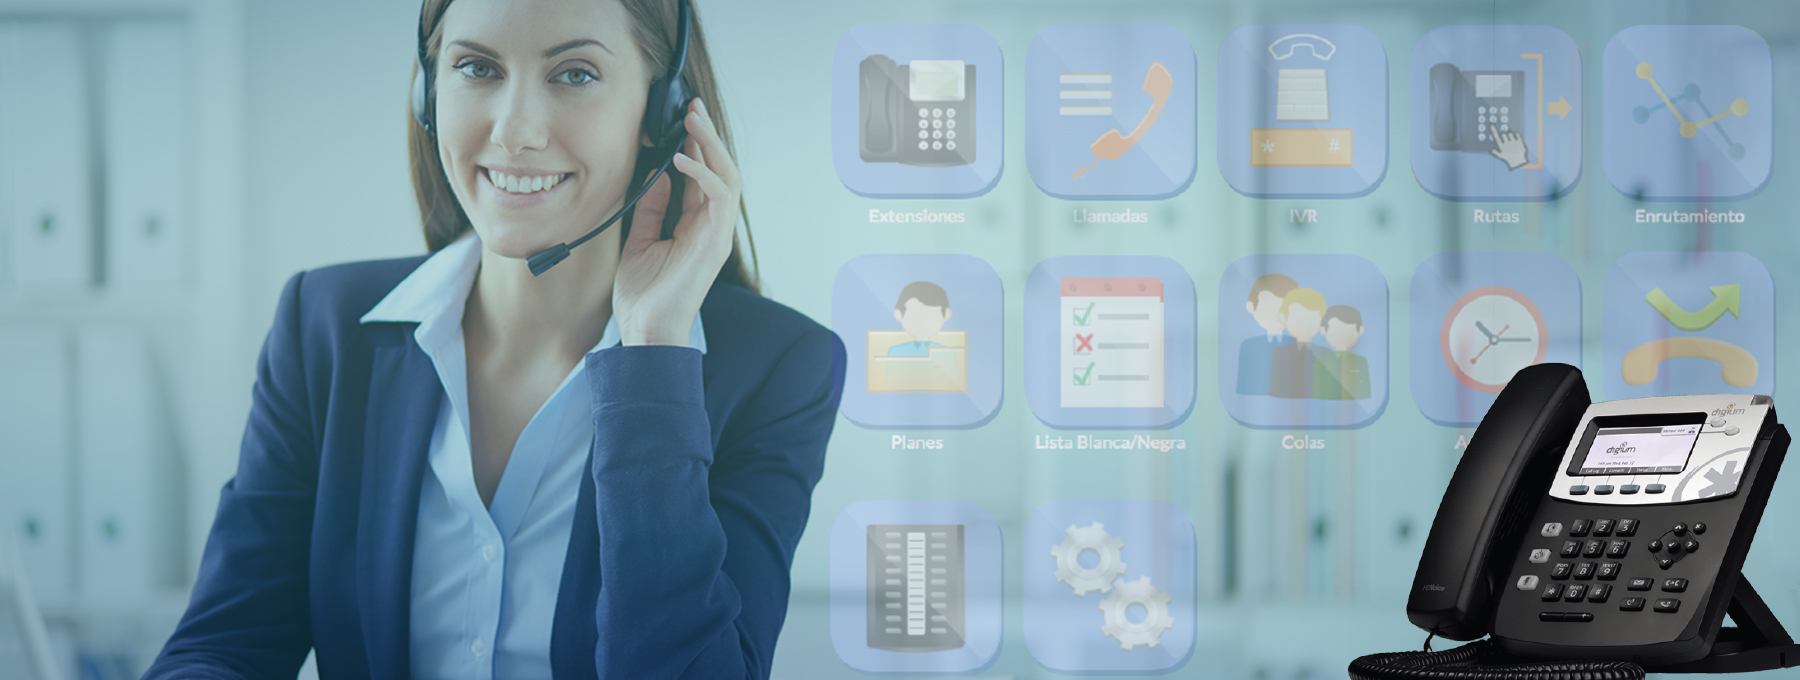 CENTRAL TELEFÓNICA  para negocios SIMPLE IPBX